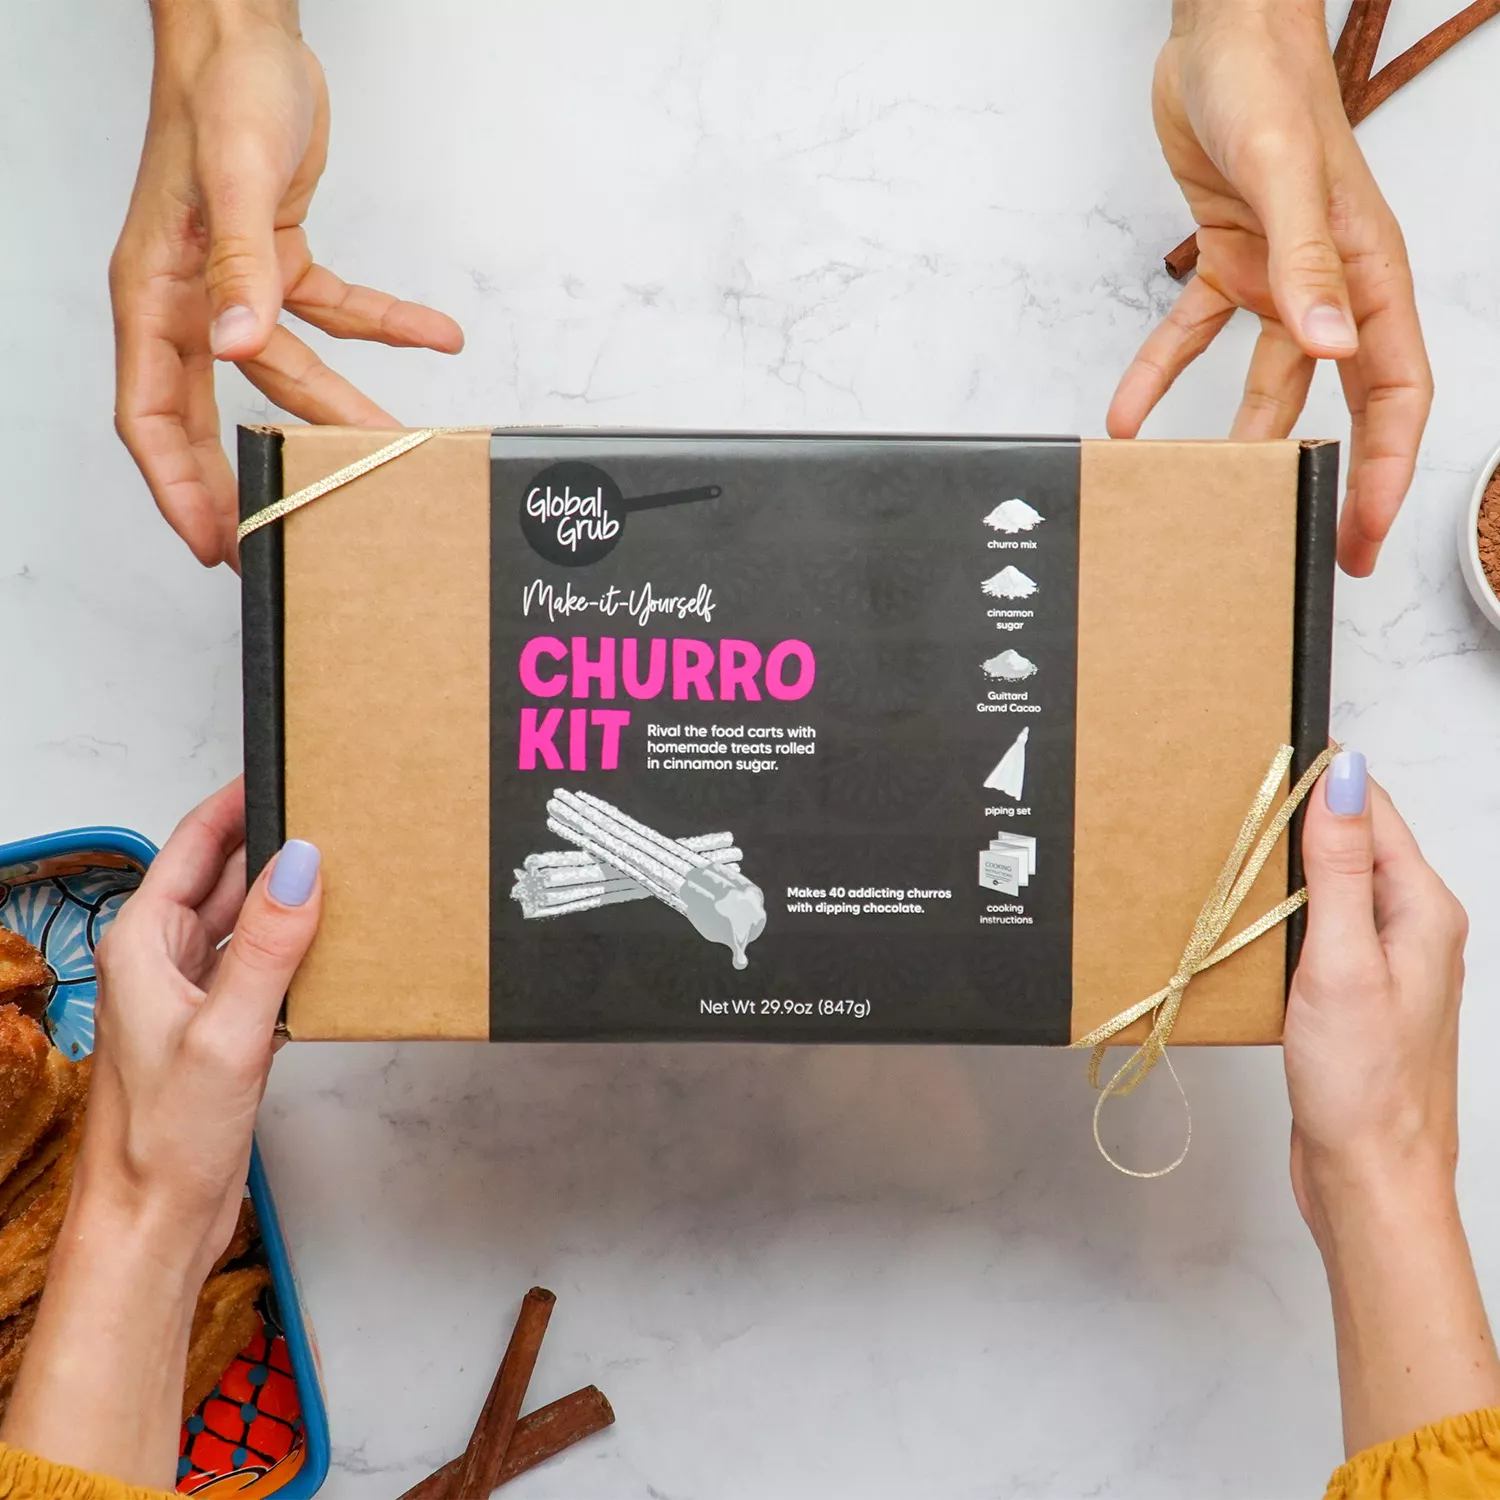 Global Grub Churro Kit